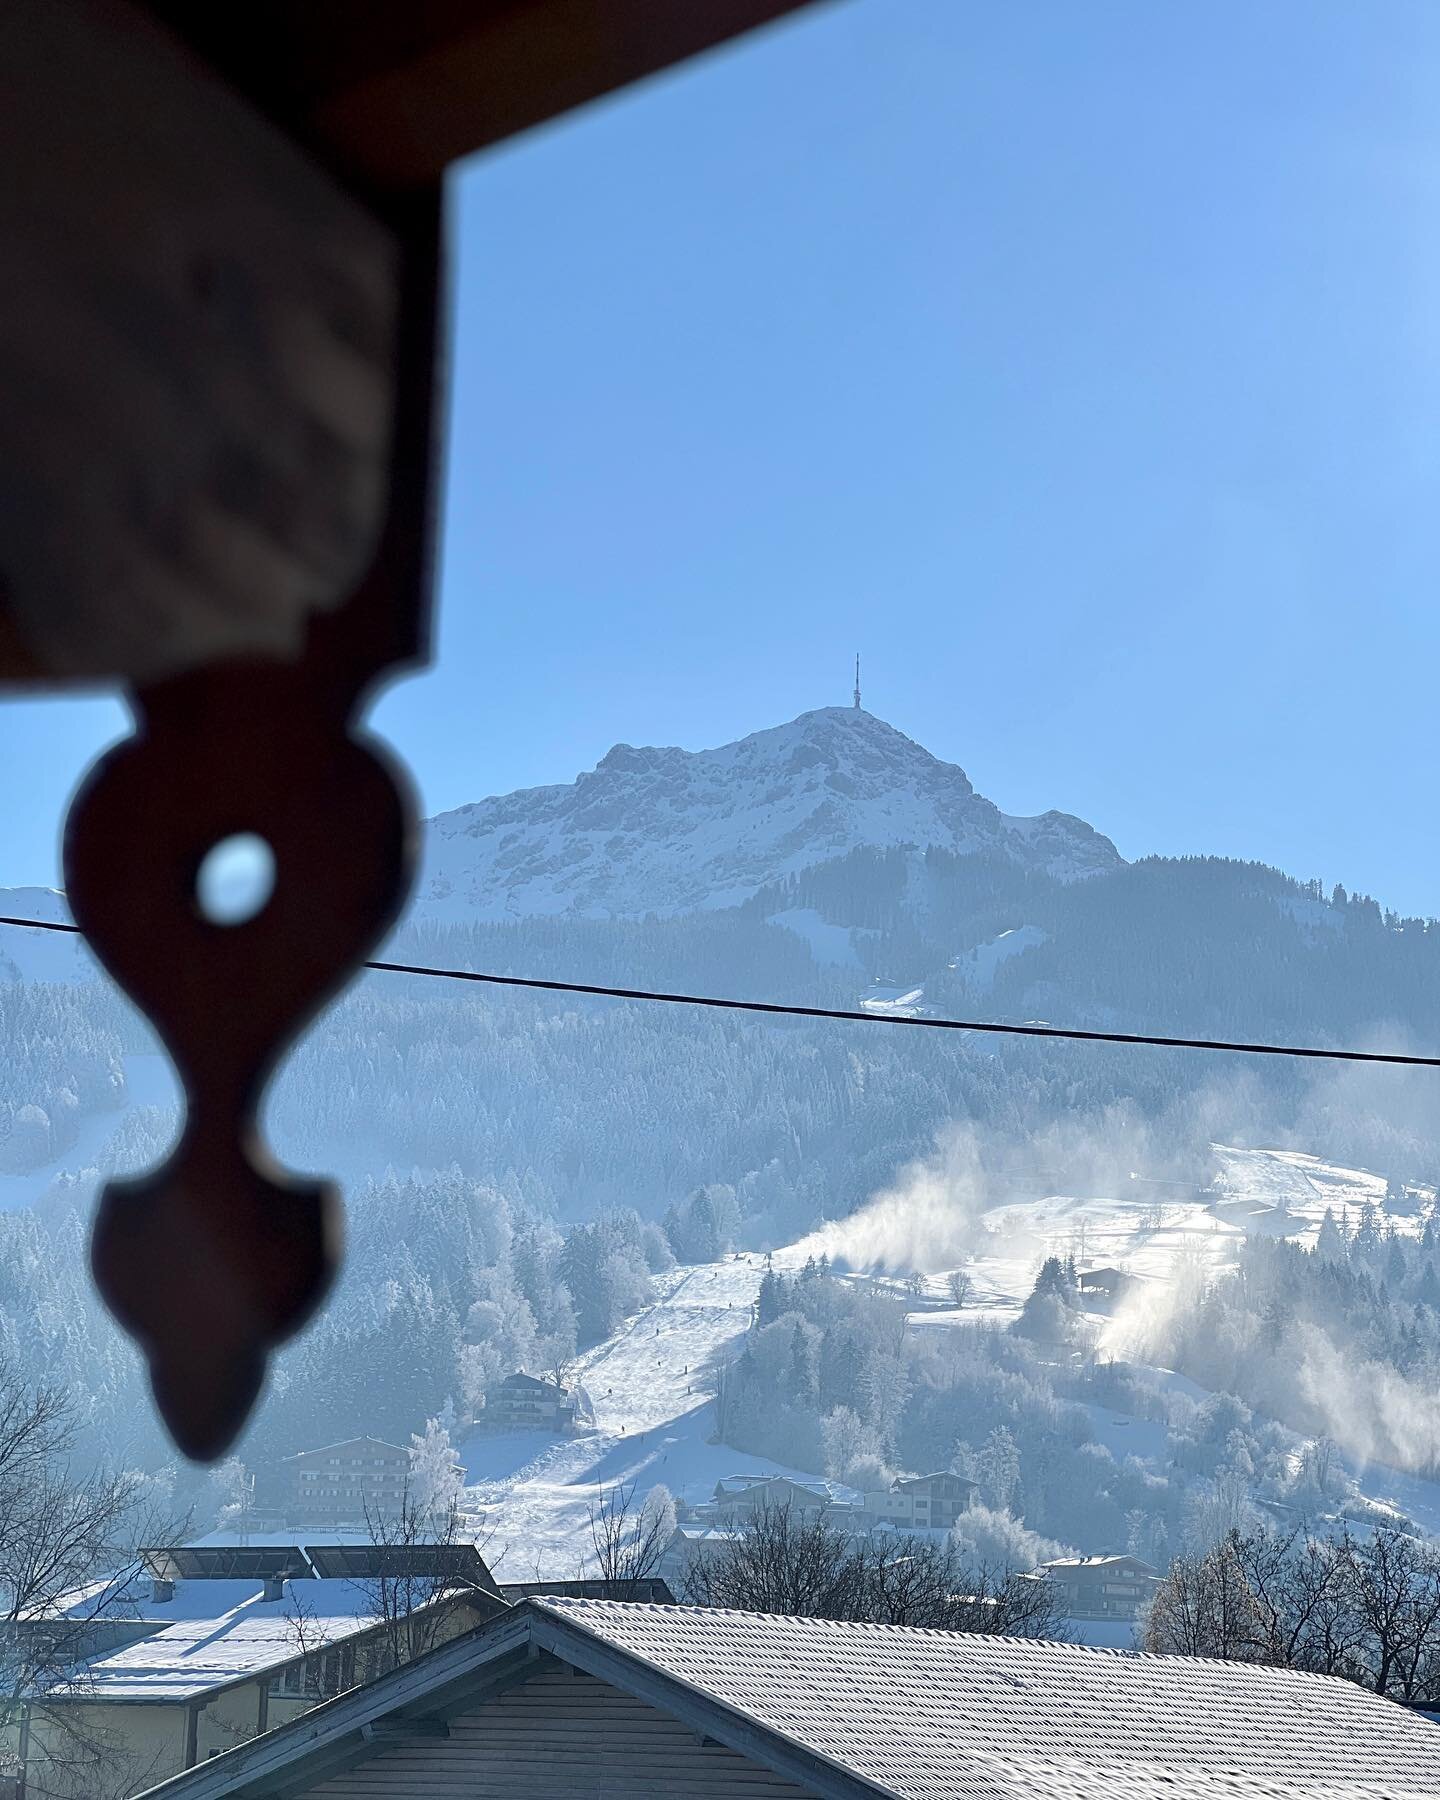 Pisten View❄️🎿🙌 
#kitzb&uuml;helerhorn #skiurlaub&ouml;sterreich #stjohannbergbahnen #hotel_alpin_tyrol #alpin_moments #kitzbuheleralpen #kaiserwetter